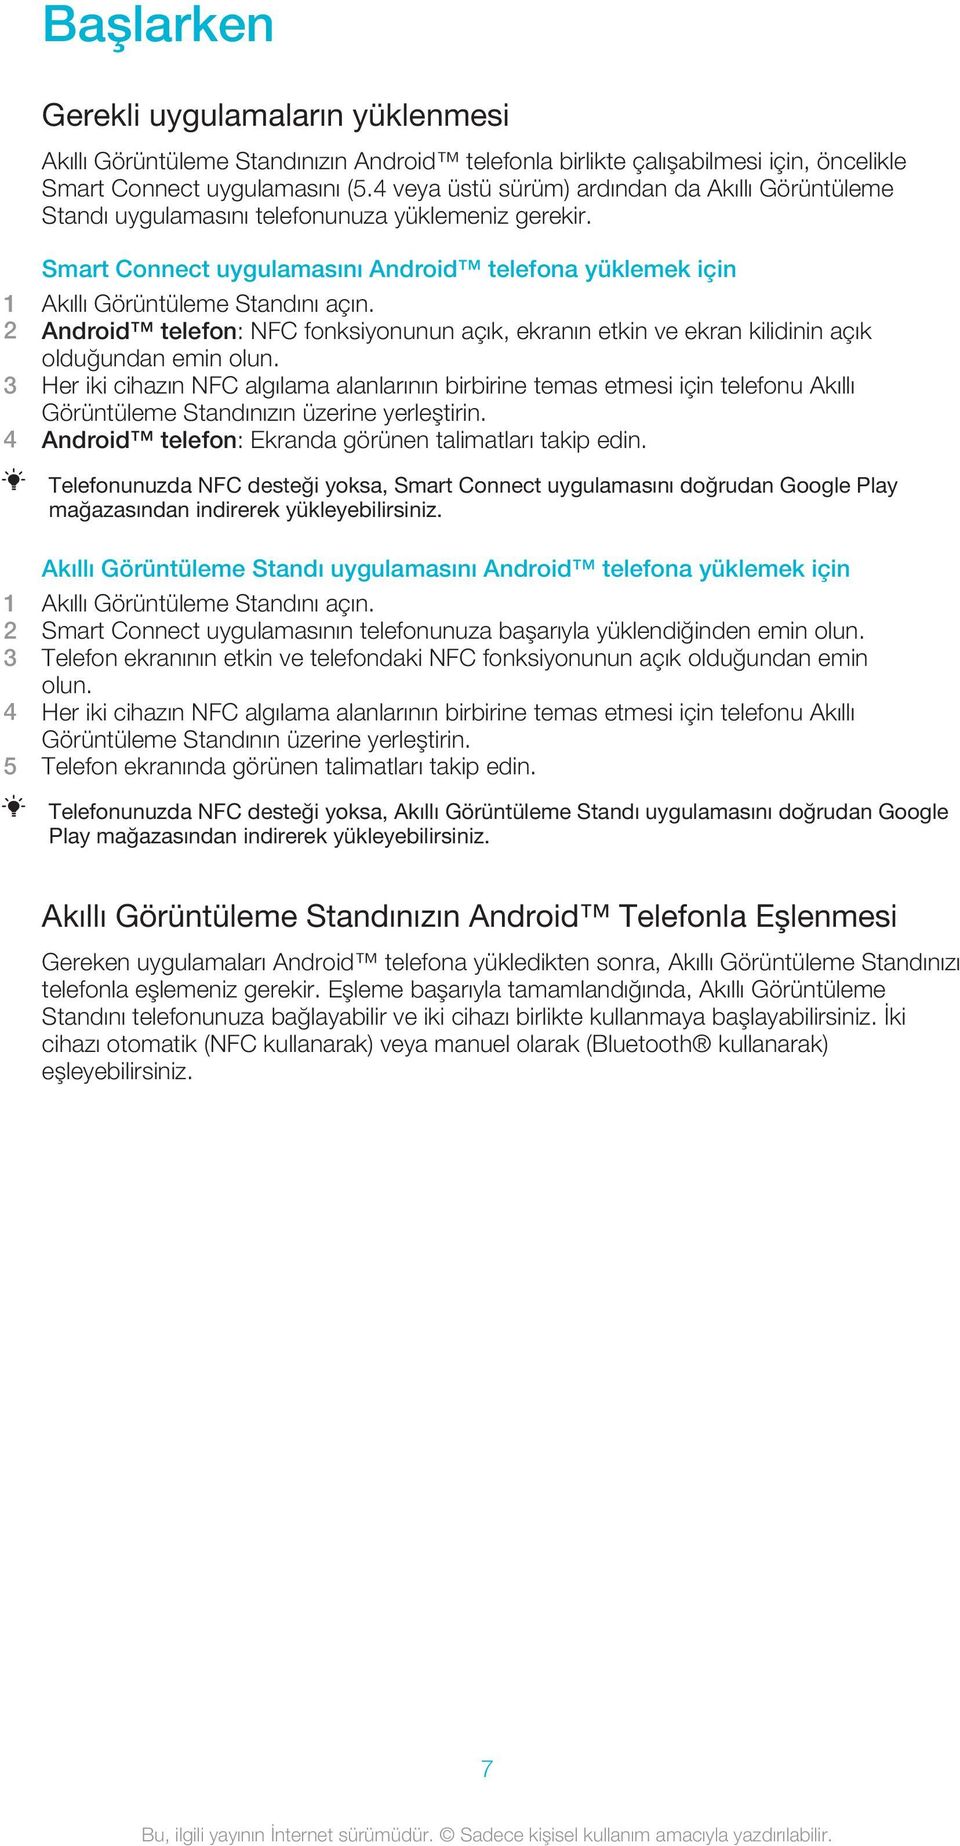 2 Android telefon: NFC fonksiyonunun açık, ekranın etkin ve ekran kilidinin açık olduğundan emin olun.